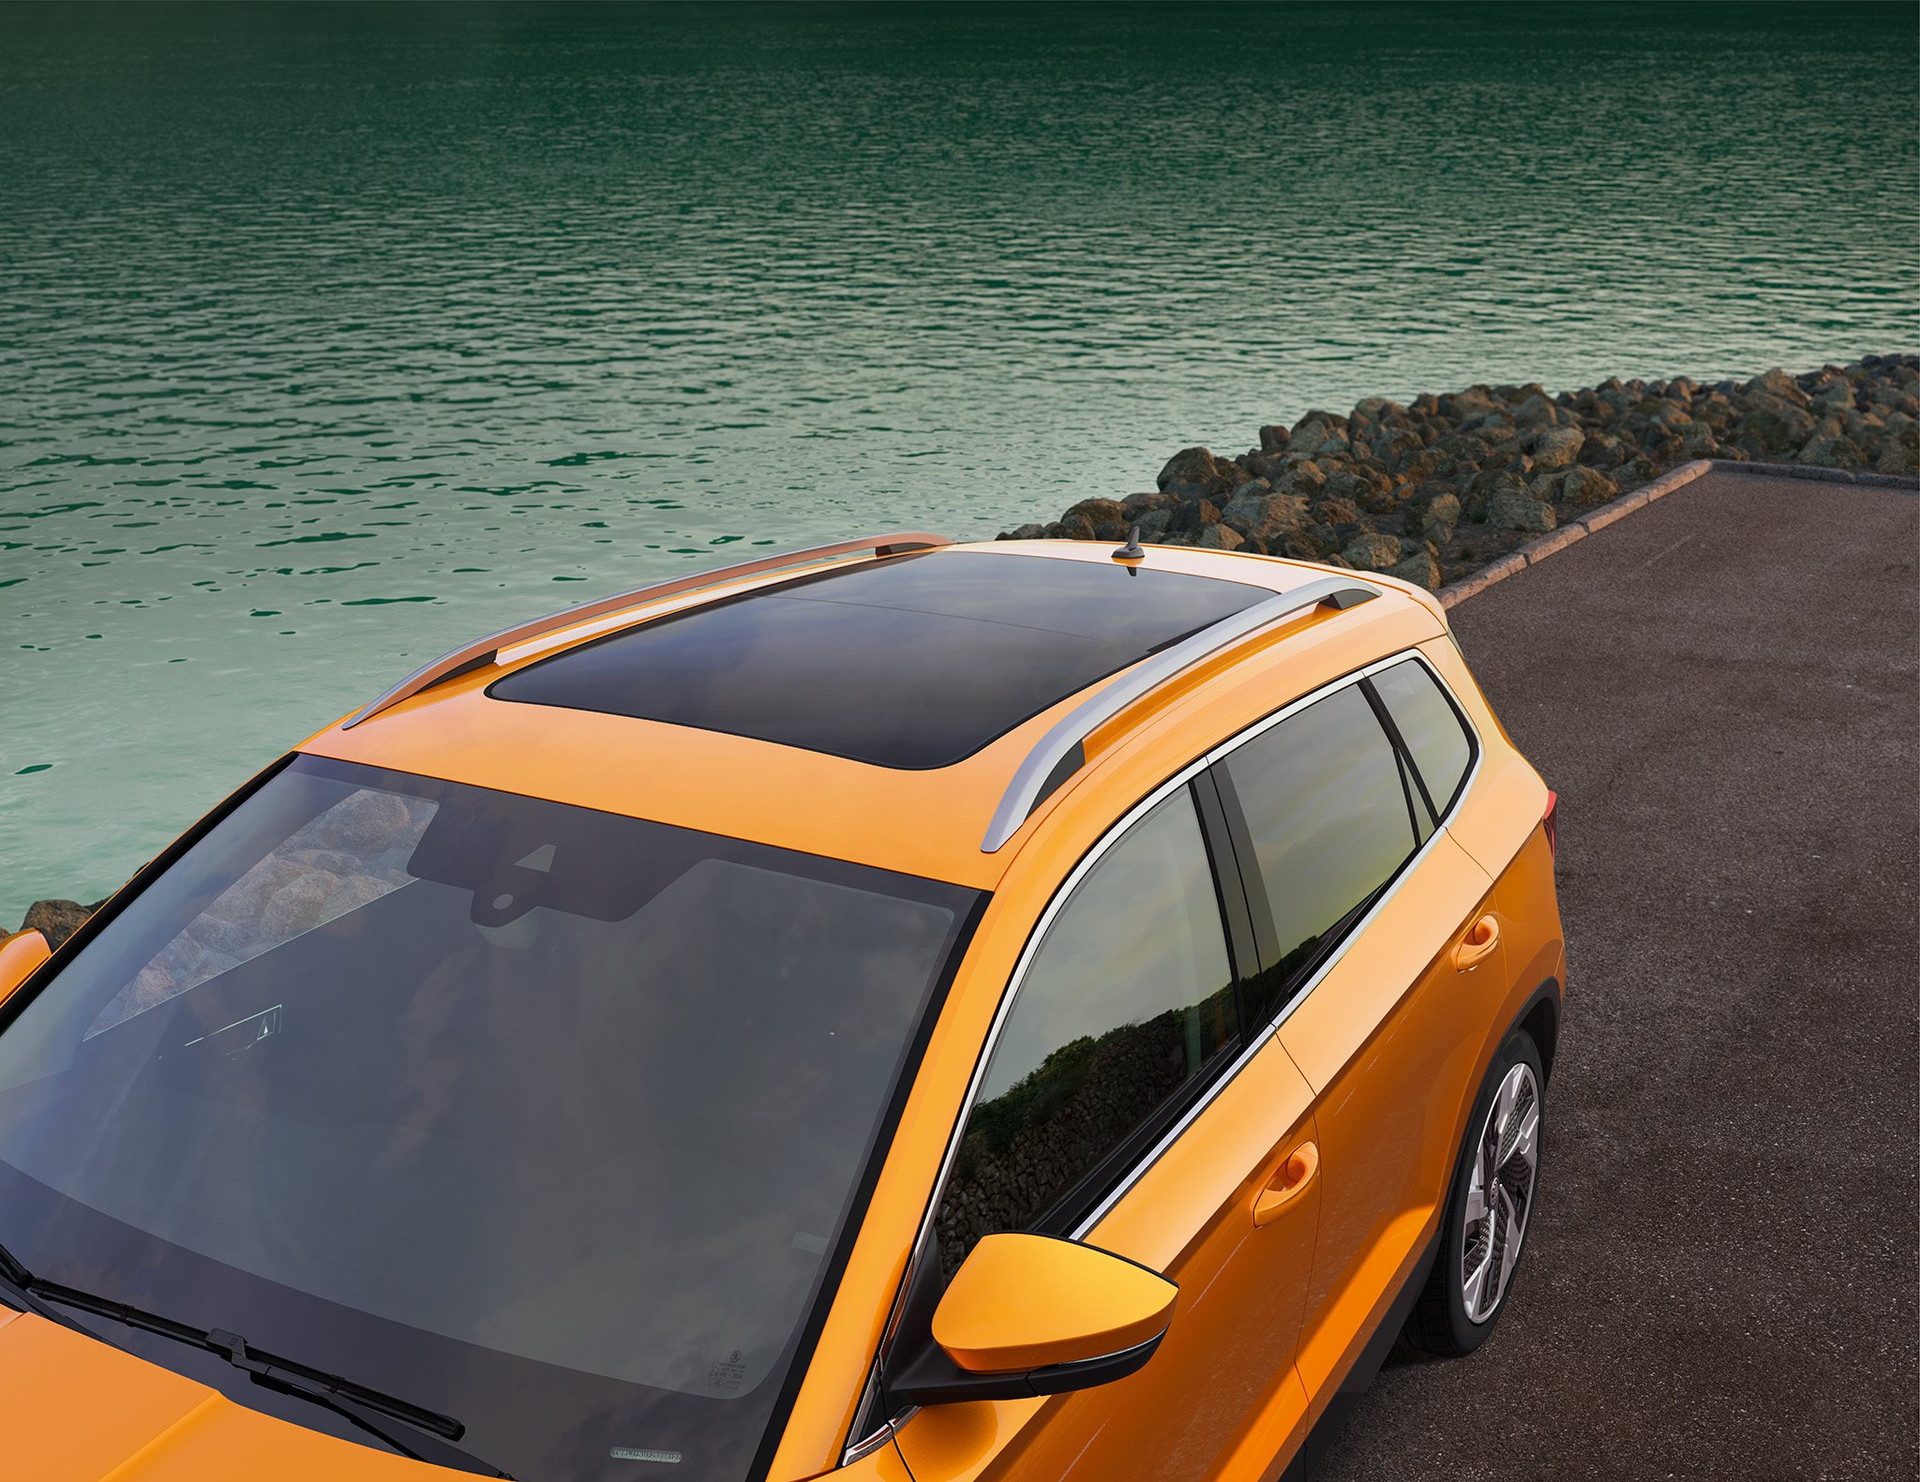 Skoda Karoq - SUV cỡ C dùng chung khung gầm với Volkswagen, chốt giá từ 999 triệu đồng cạnh tranh với Mazda CX-5 - Ảnh 4.